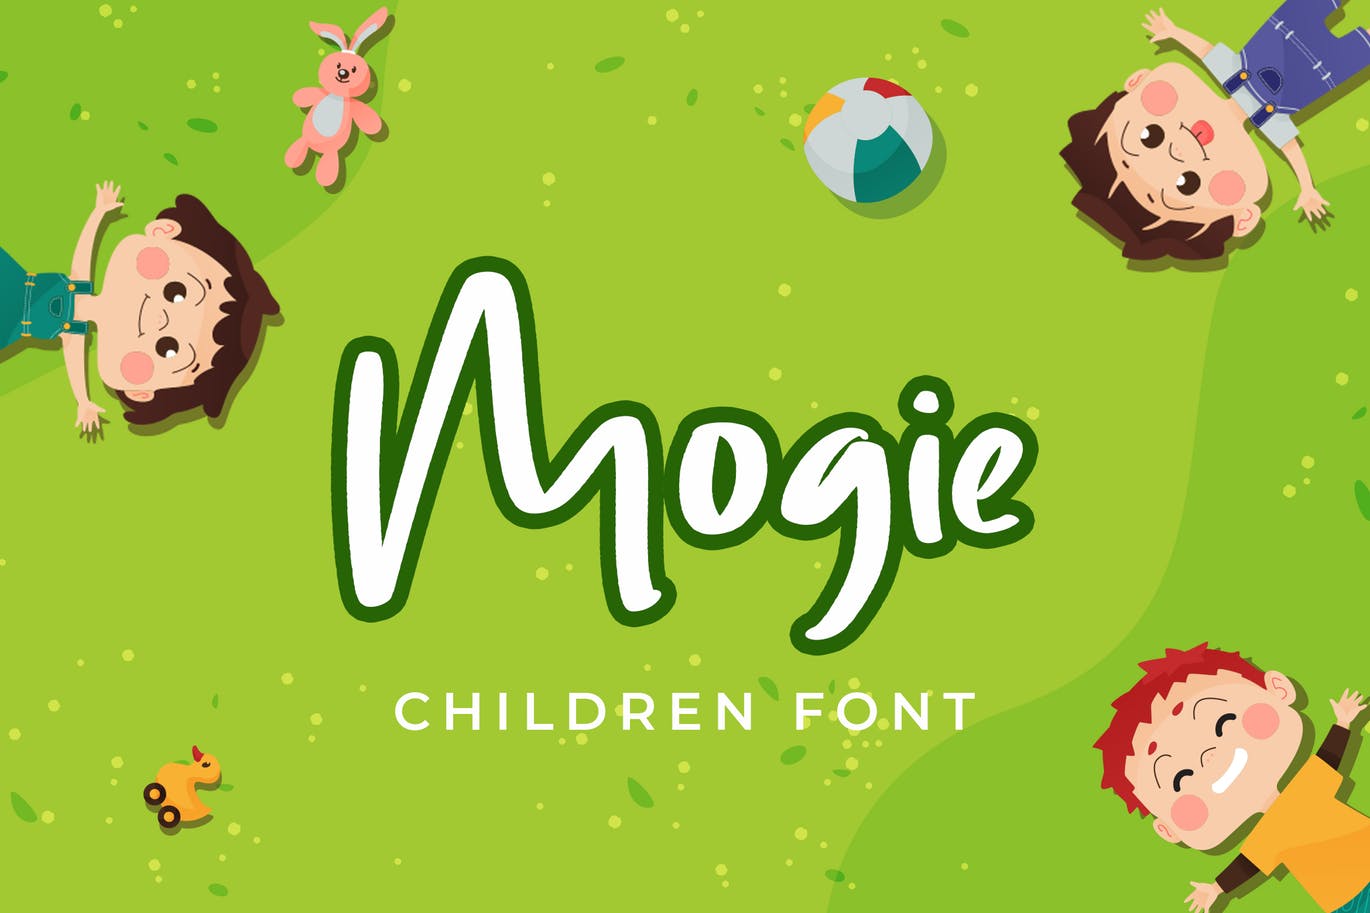 儿童主题设计英文手写字体非凡图库精选 Mogie Cute and Amazing Display Font插图